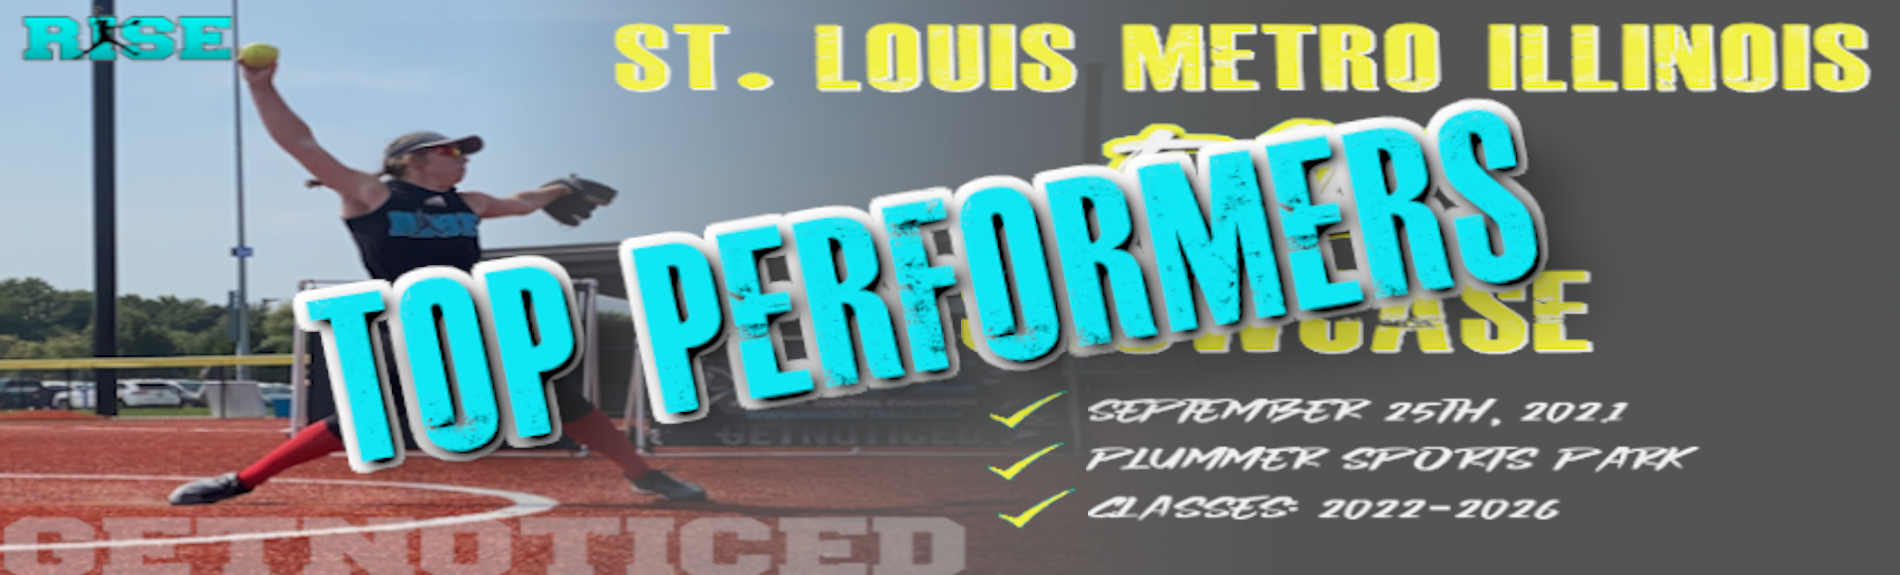 St. Louis Metro Illinois Fall Showcase “TOP PERFORMERS”